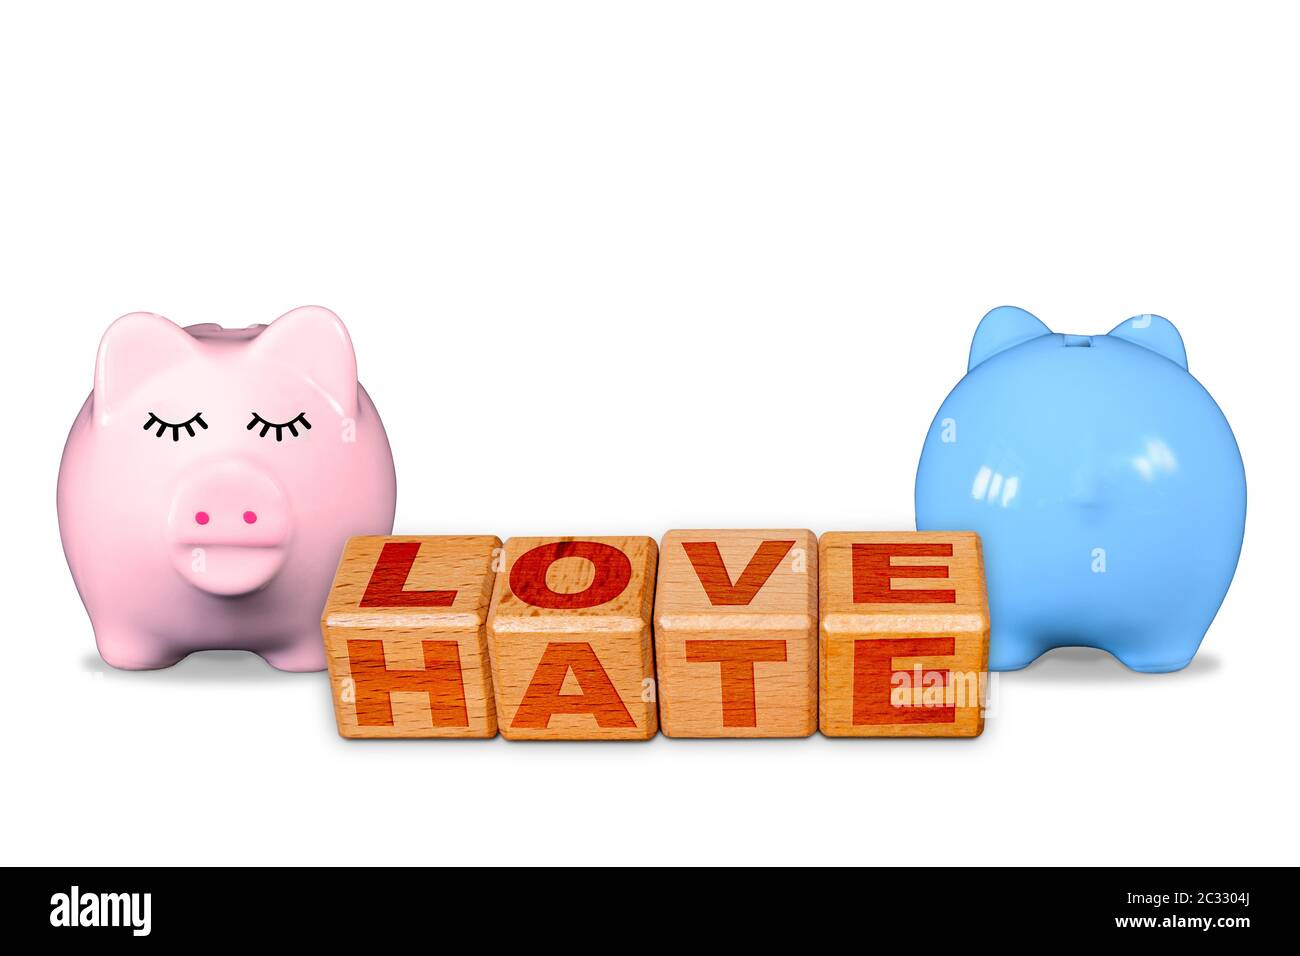 Amour et haine sur les mêmes blocs, concept de l'amour haine relation avec les banques de piggy mâles et femelles opposées montrant l'affichage émotionnel contrasté. C Banque D'Images